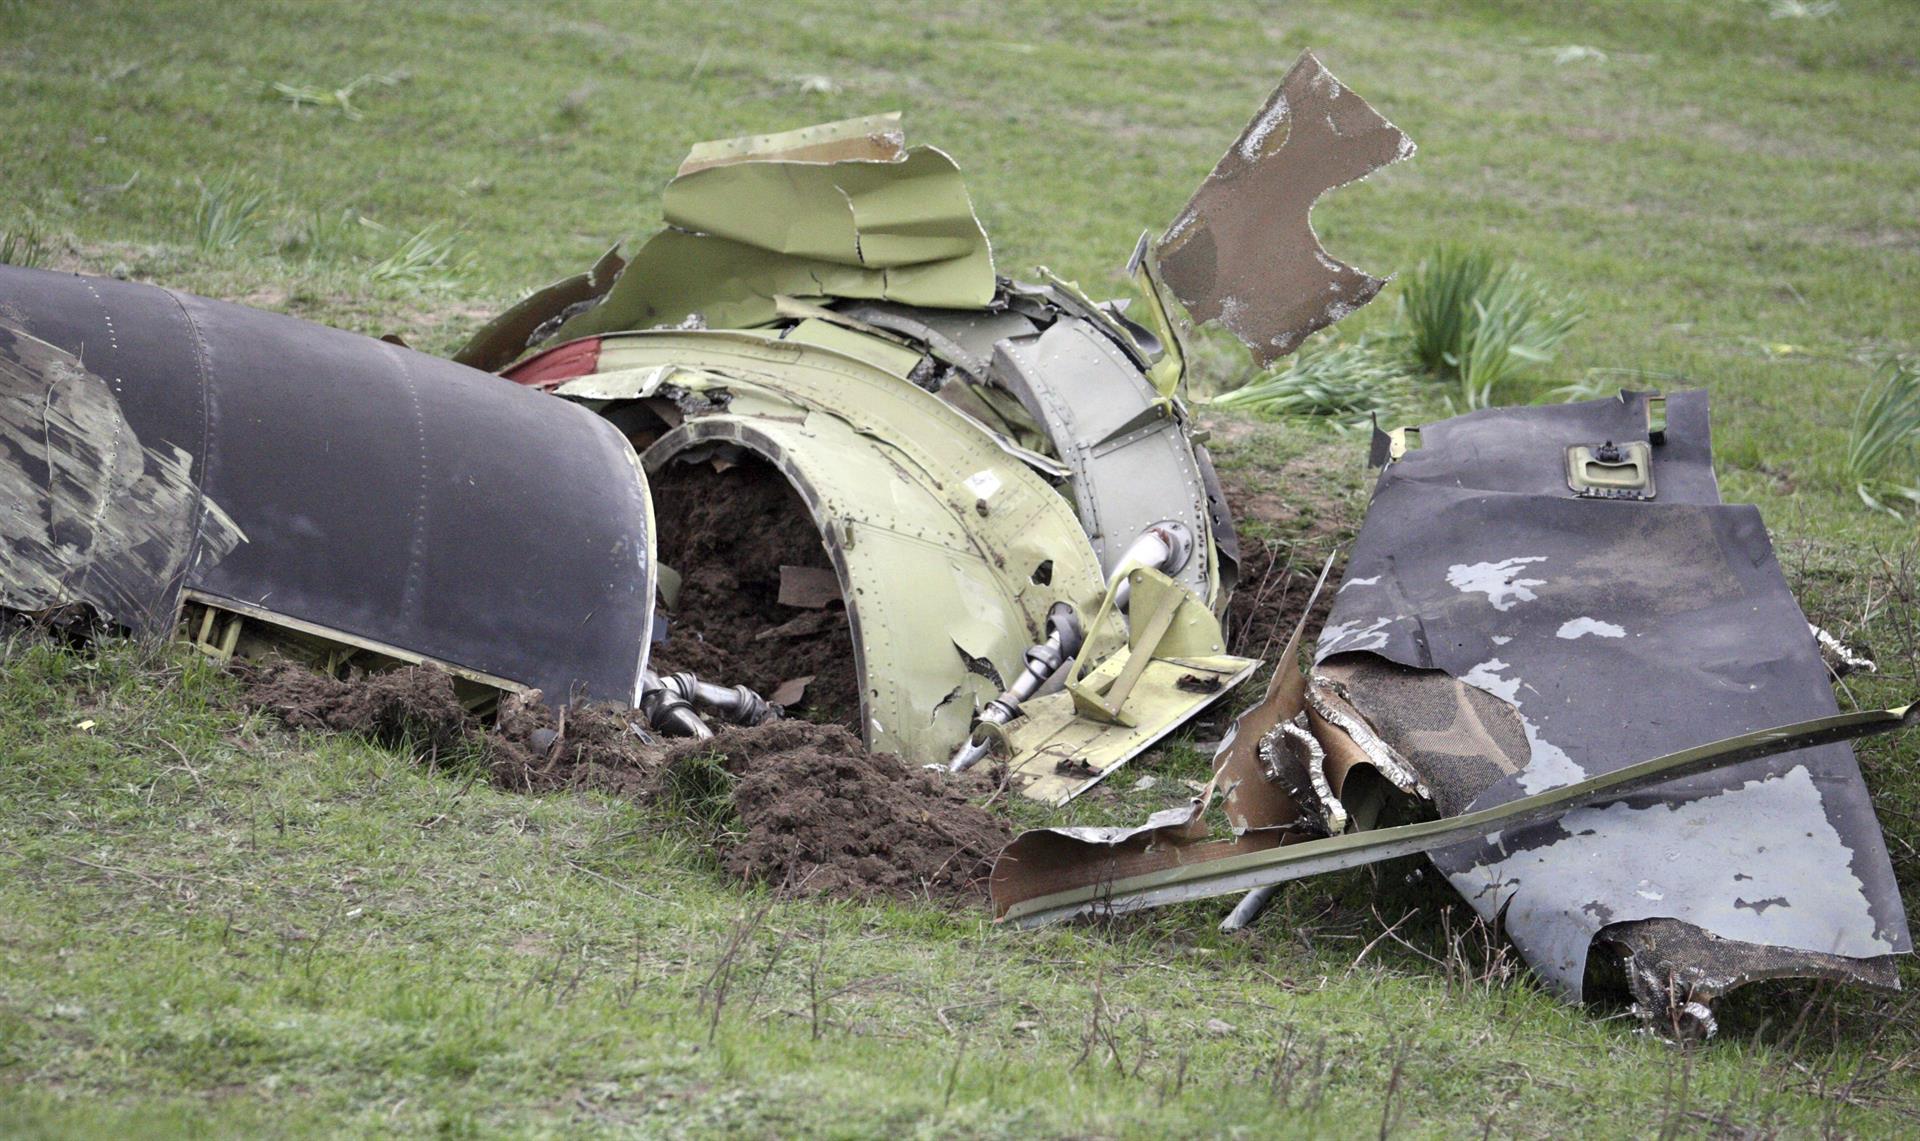 Vista general de los restos del avión militar estadounidense que tuvo un accidente. Imagen de archivo. EFE/Igor Kovalenko
